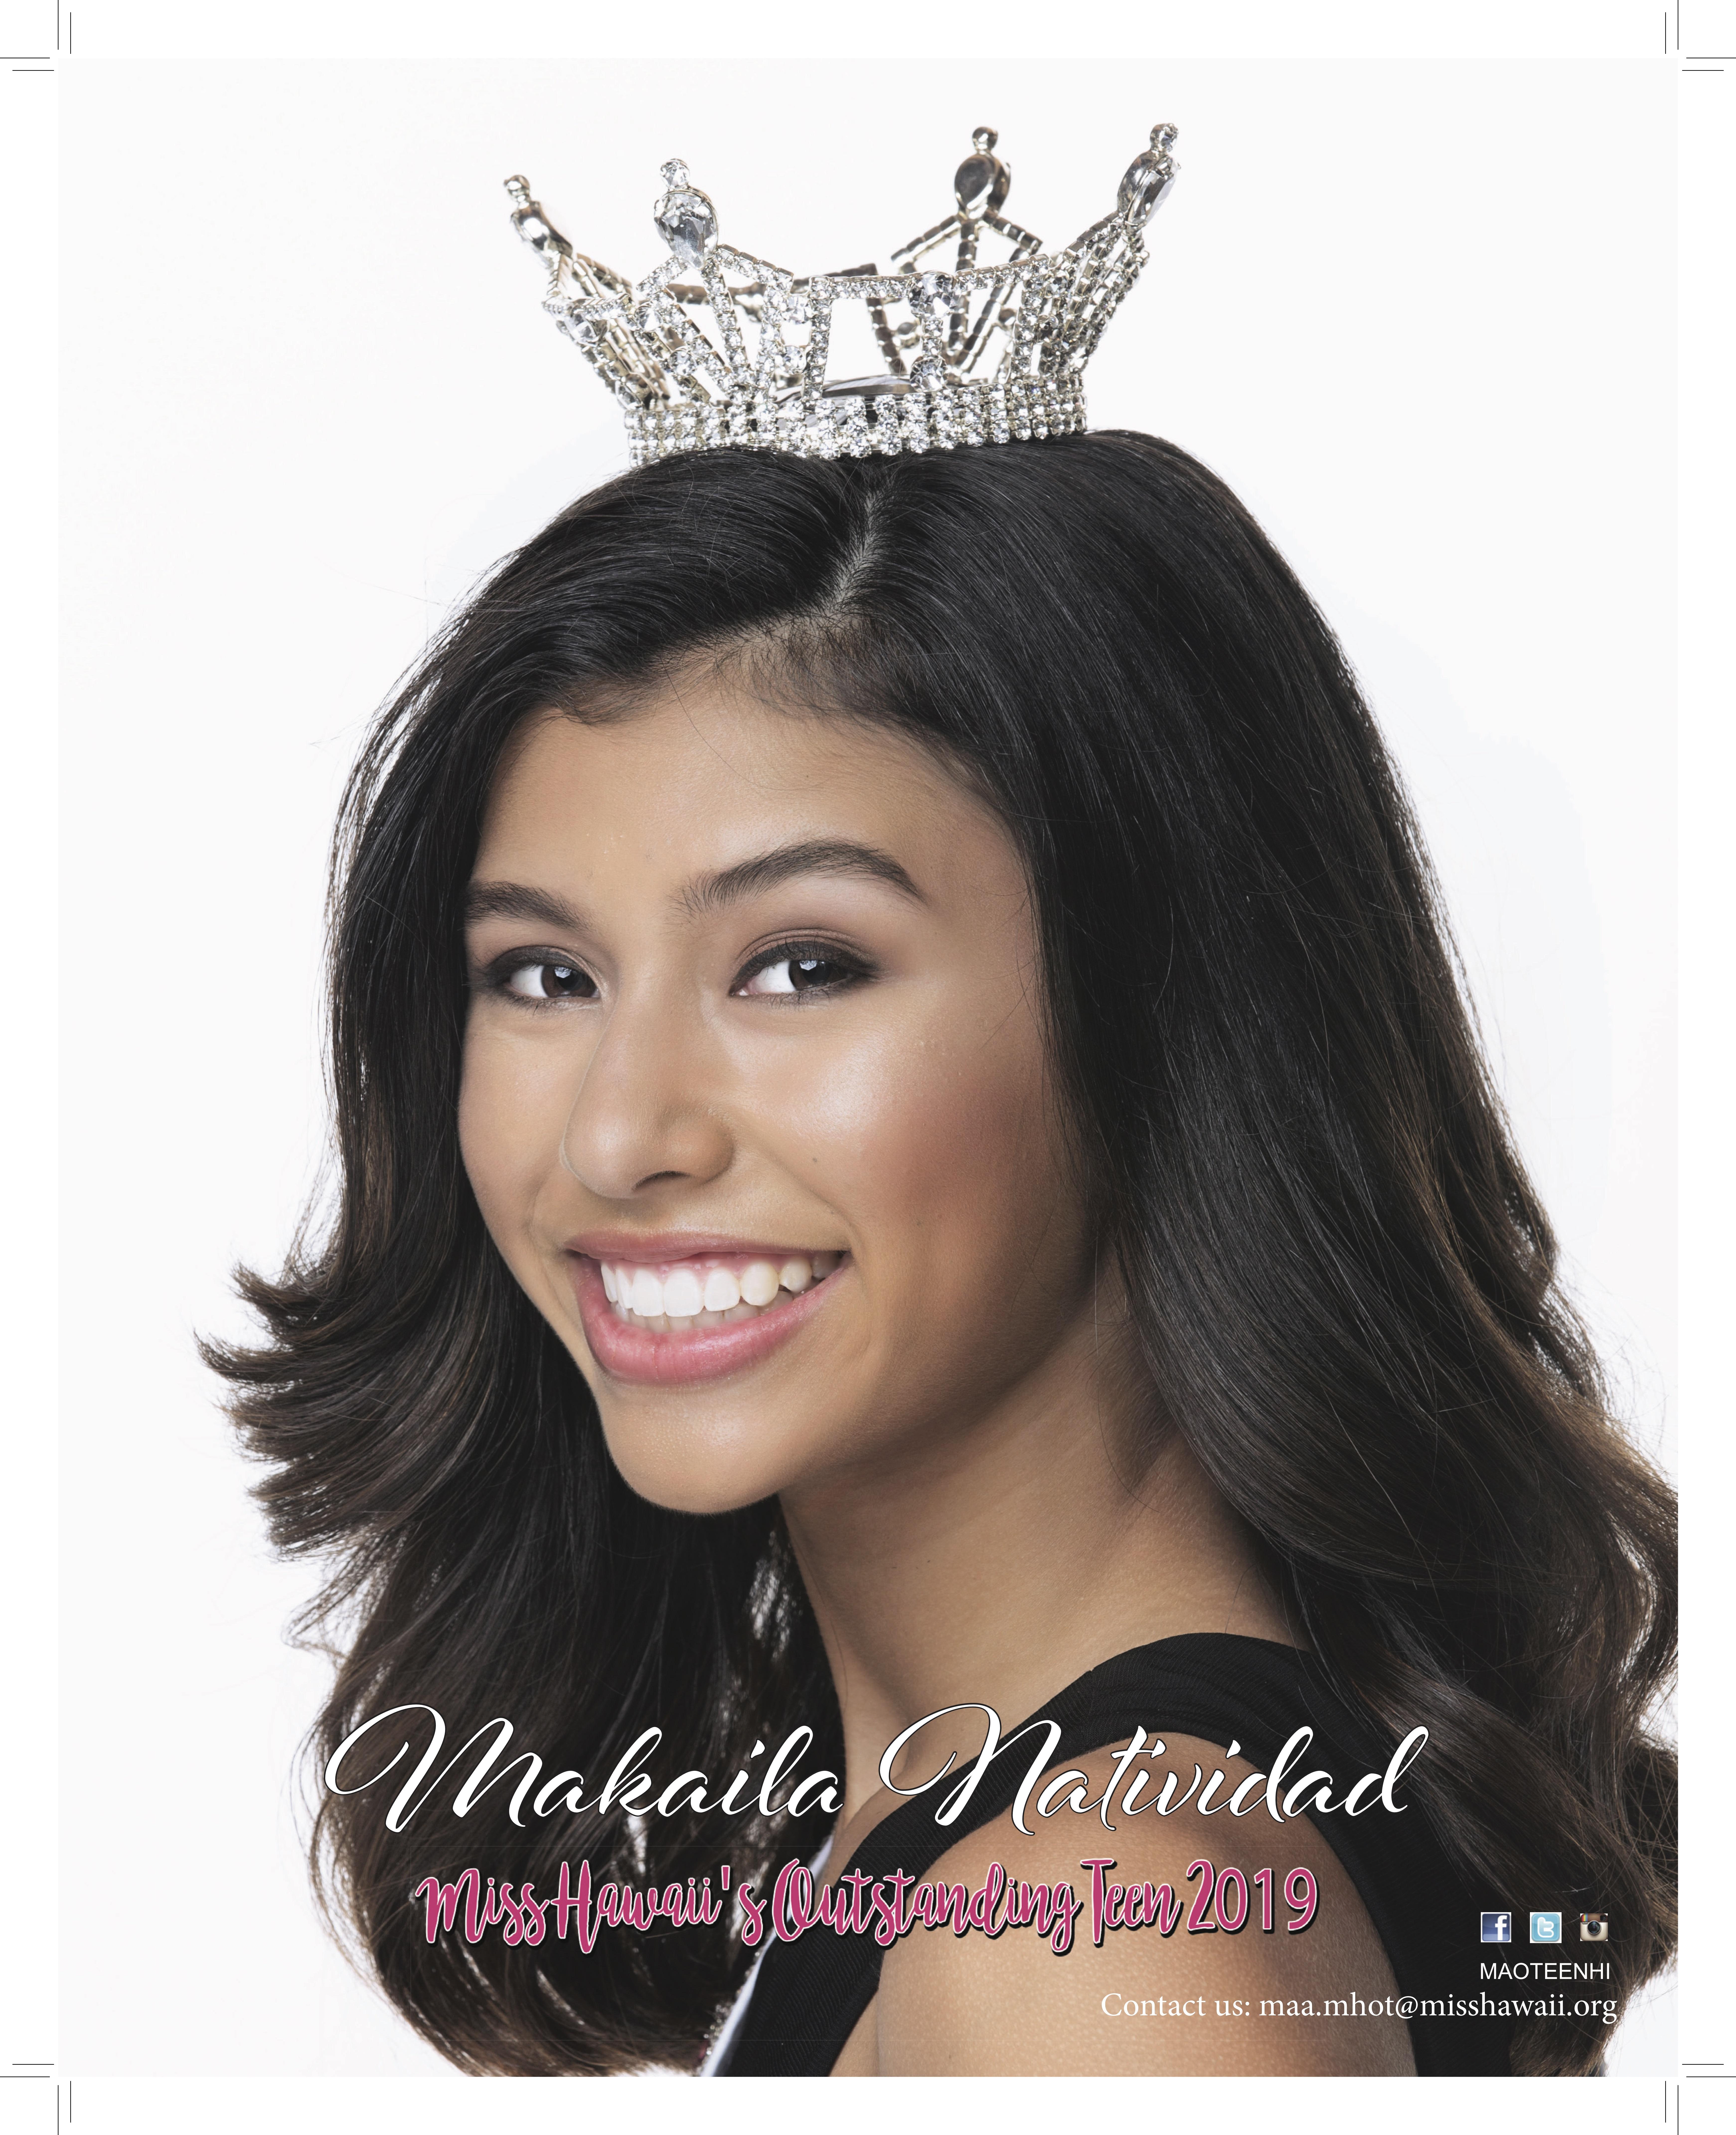 Miss Teen Hawaii 2019 - Makaila Natividad